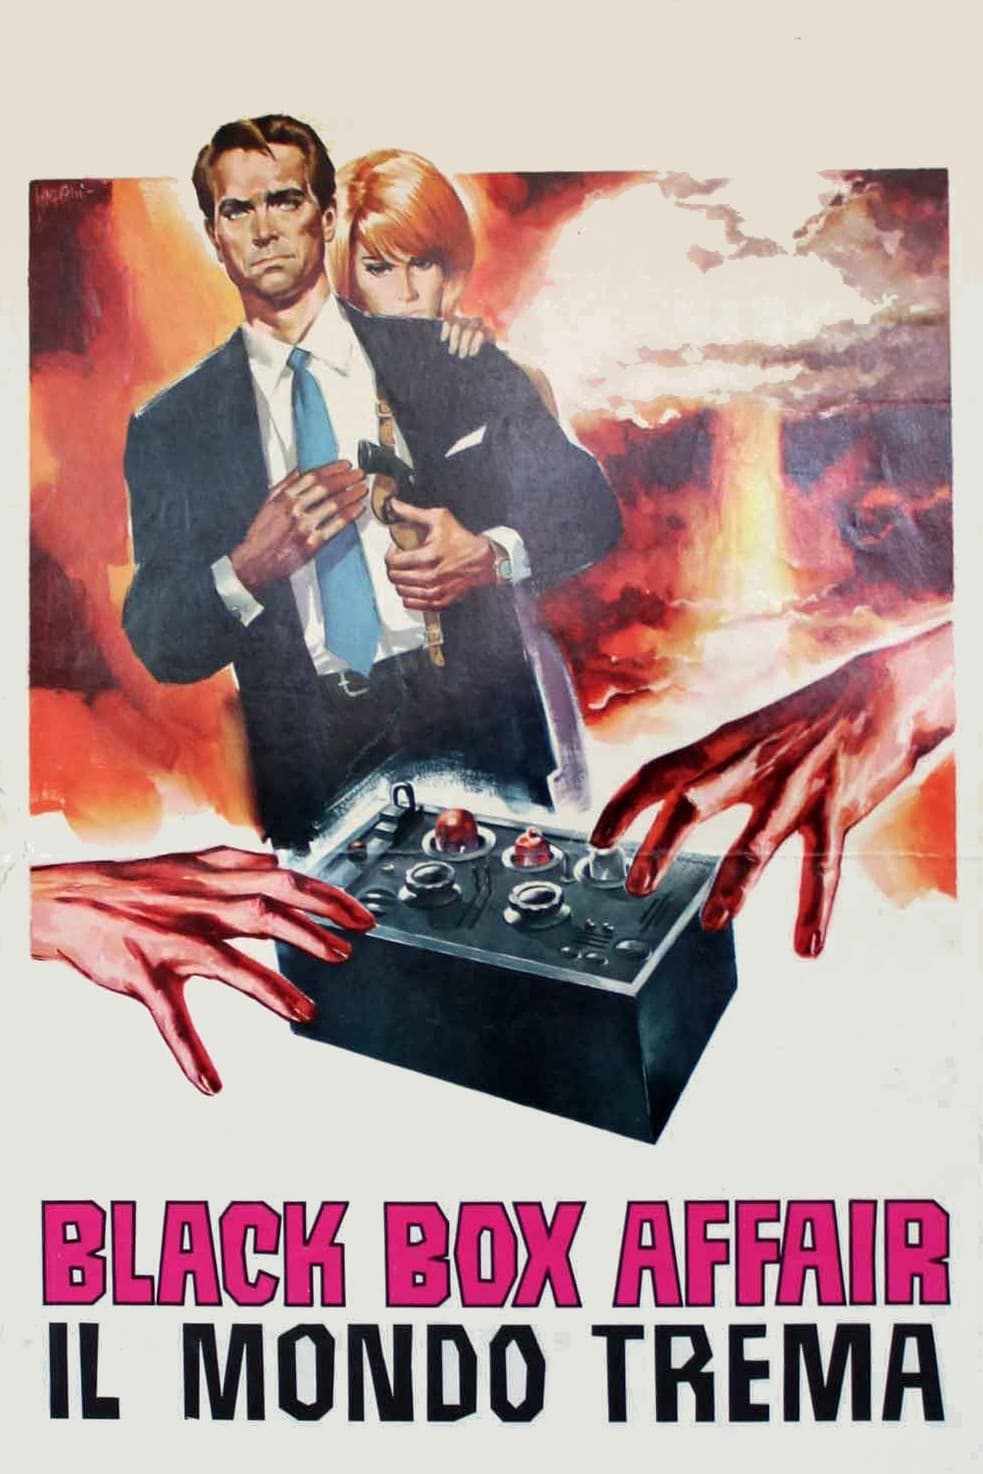 Die Black-Box-Affäre (1966)